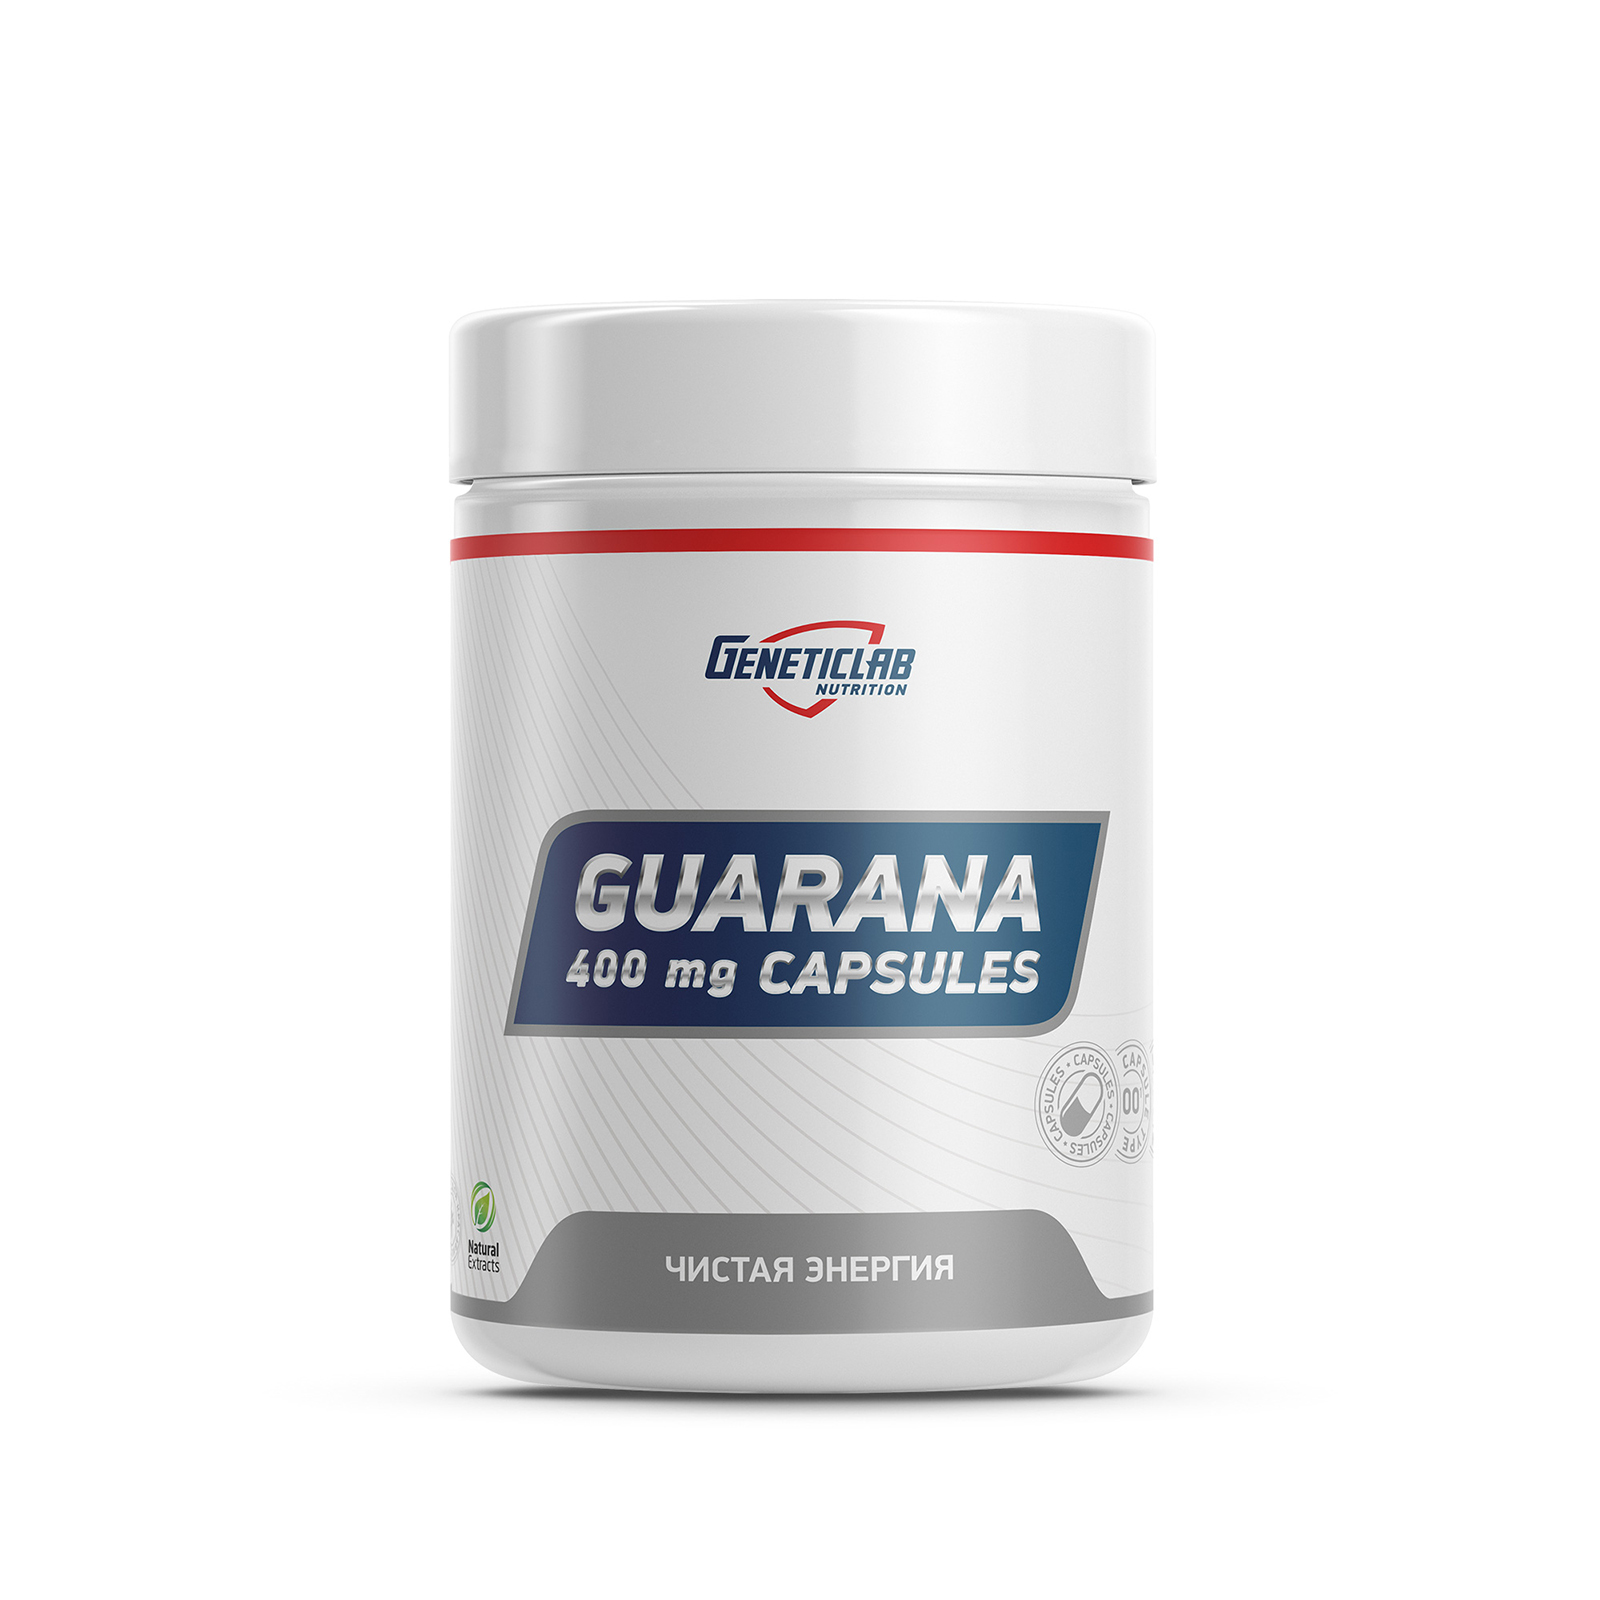 Geneticlab GUARANA capsules 60 cap